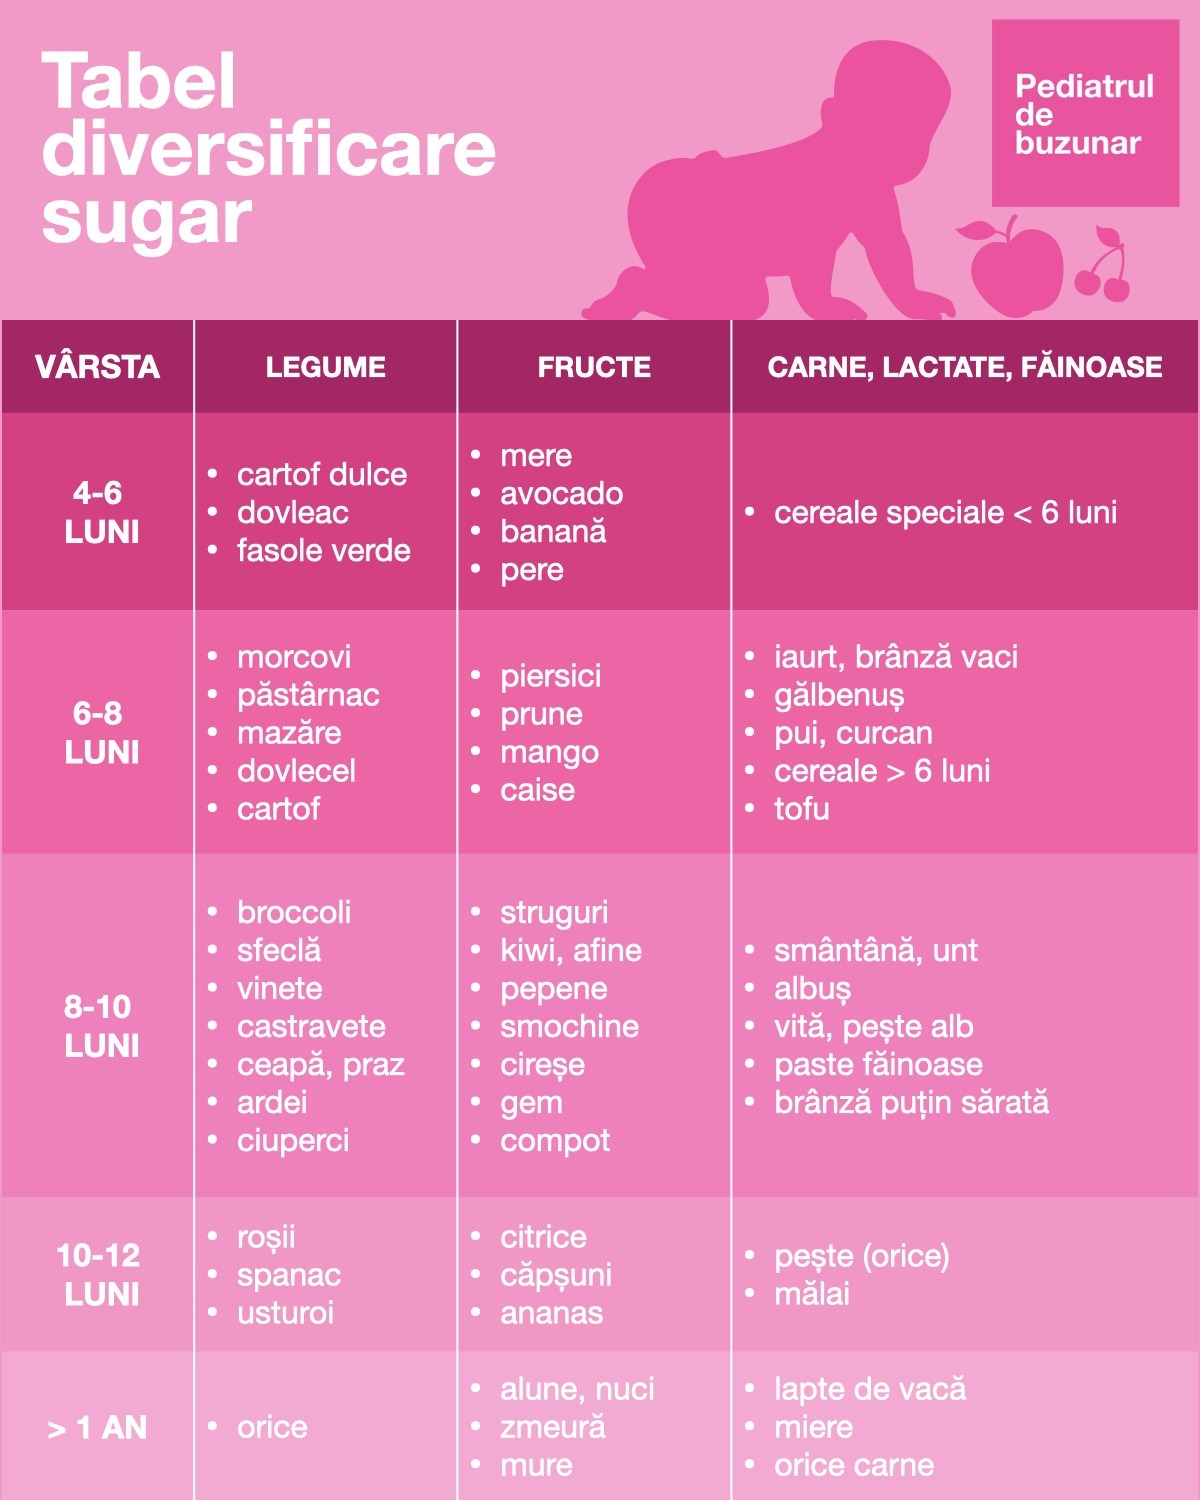 Tabel diversificare sugar